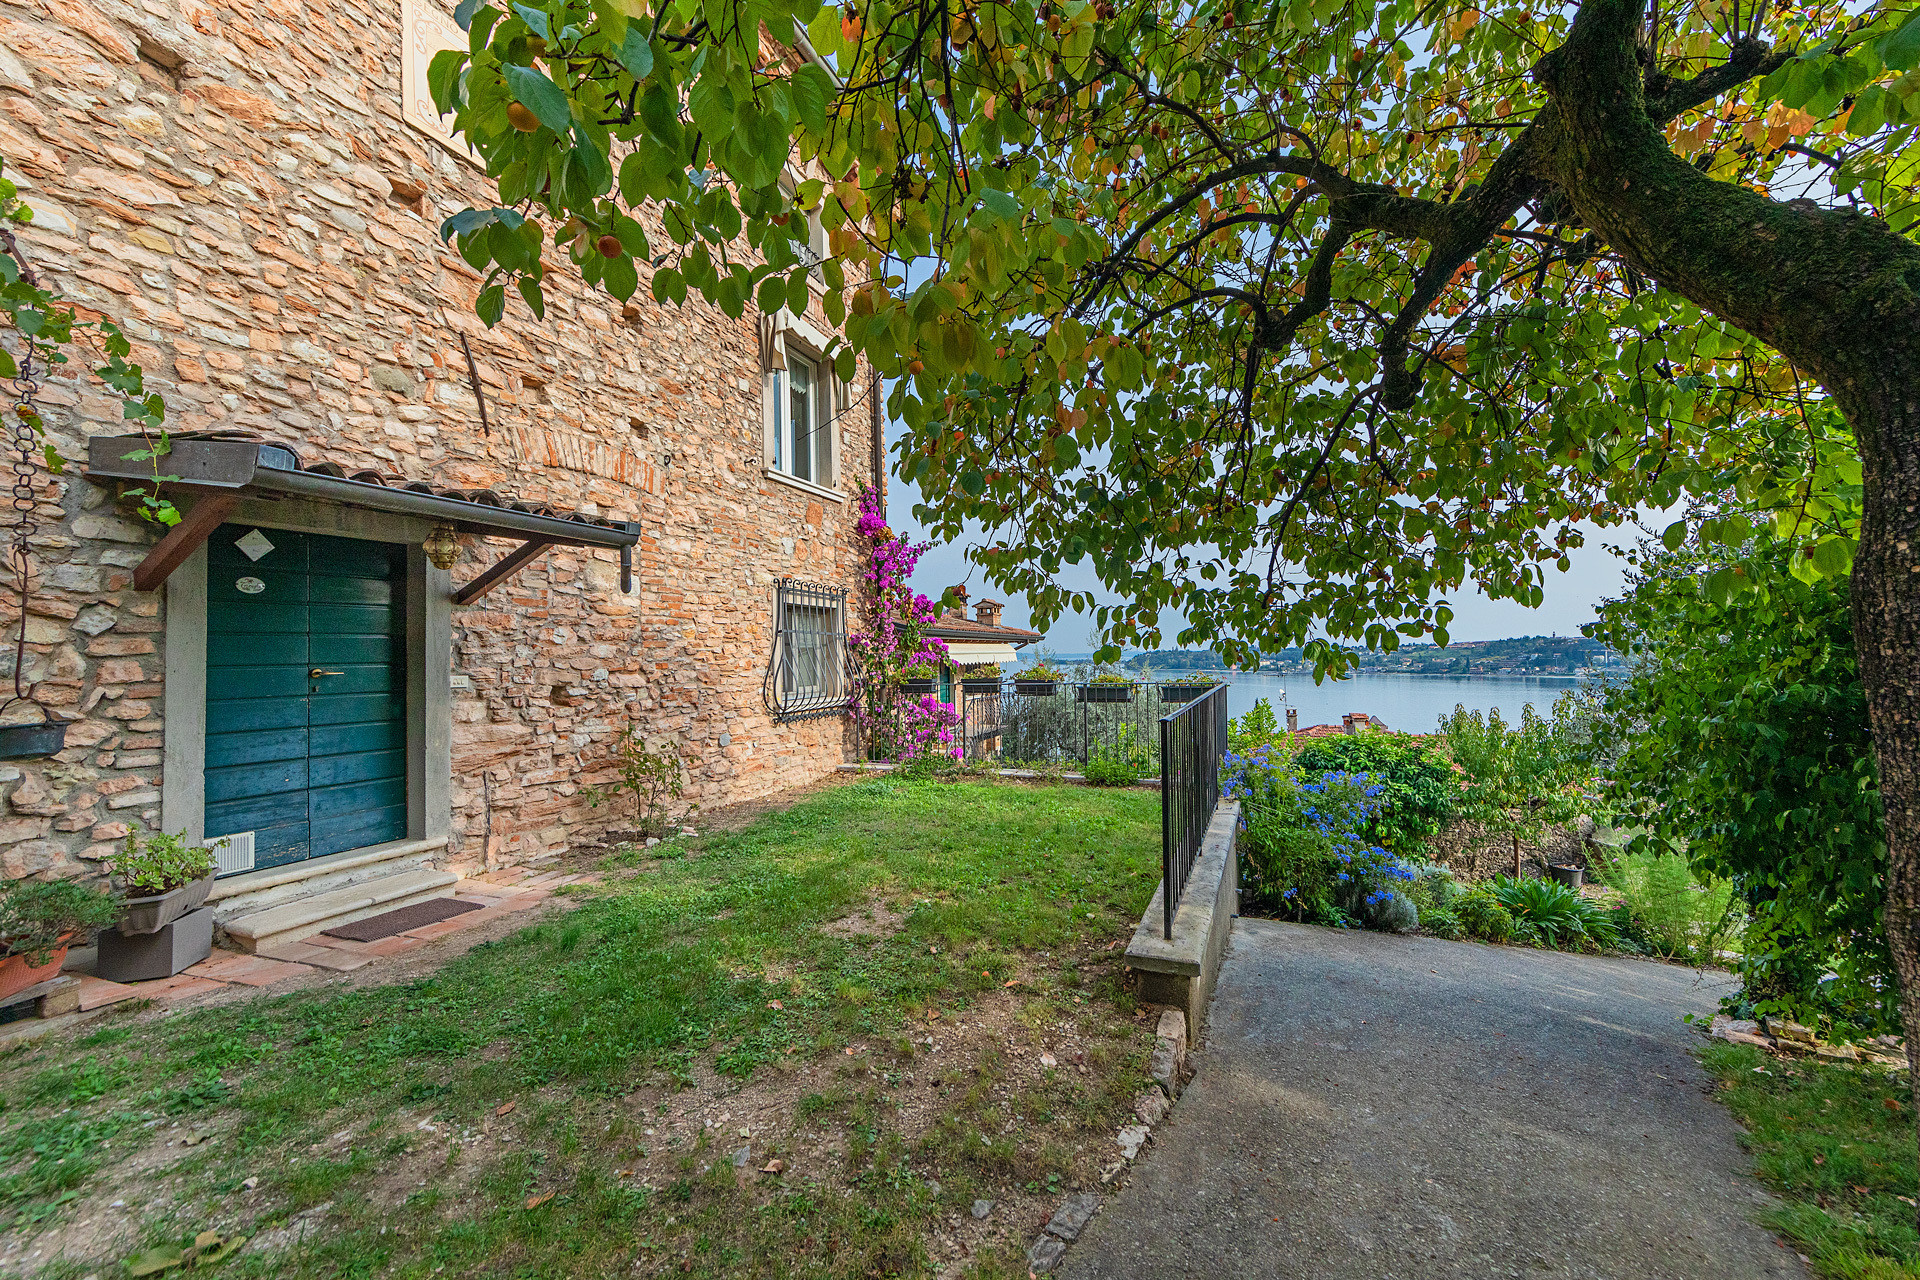 Un panorama da sogno sul Lago di Garda